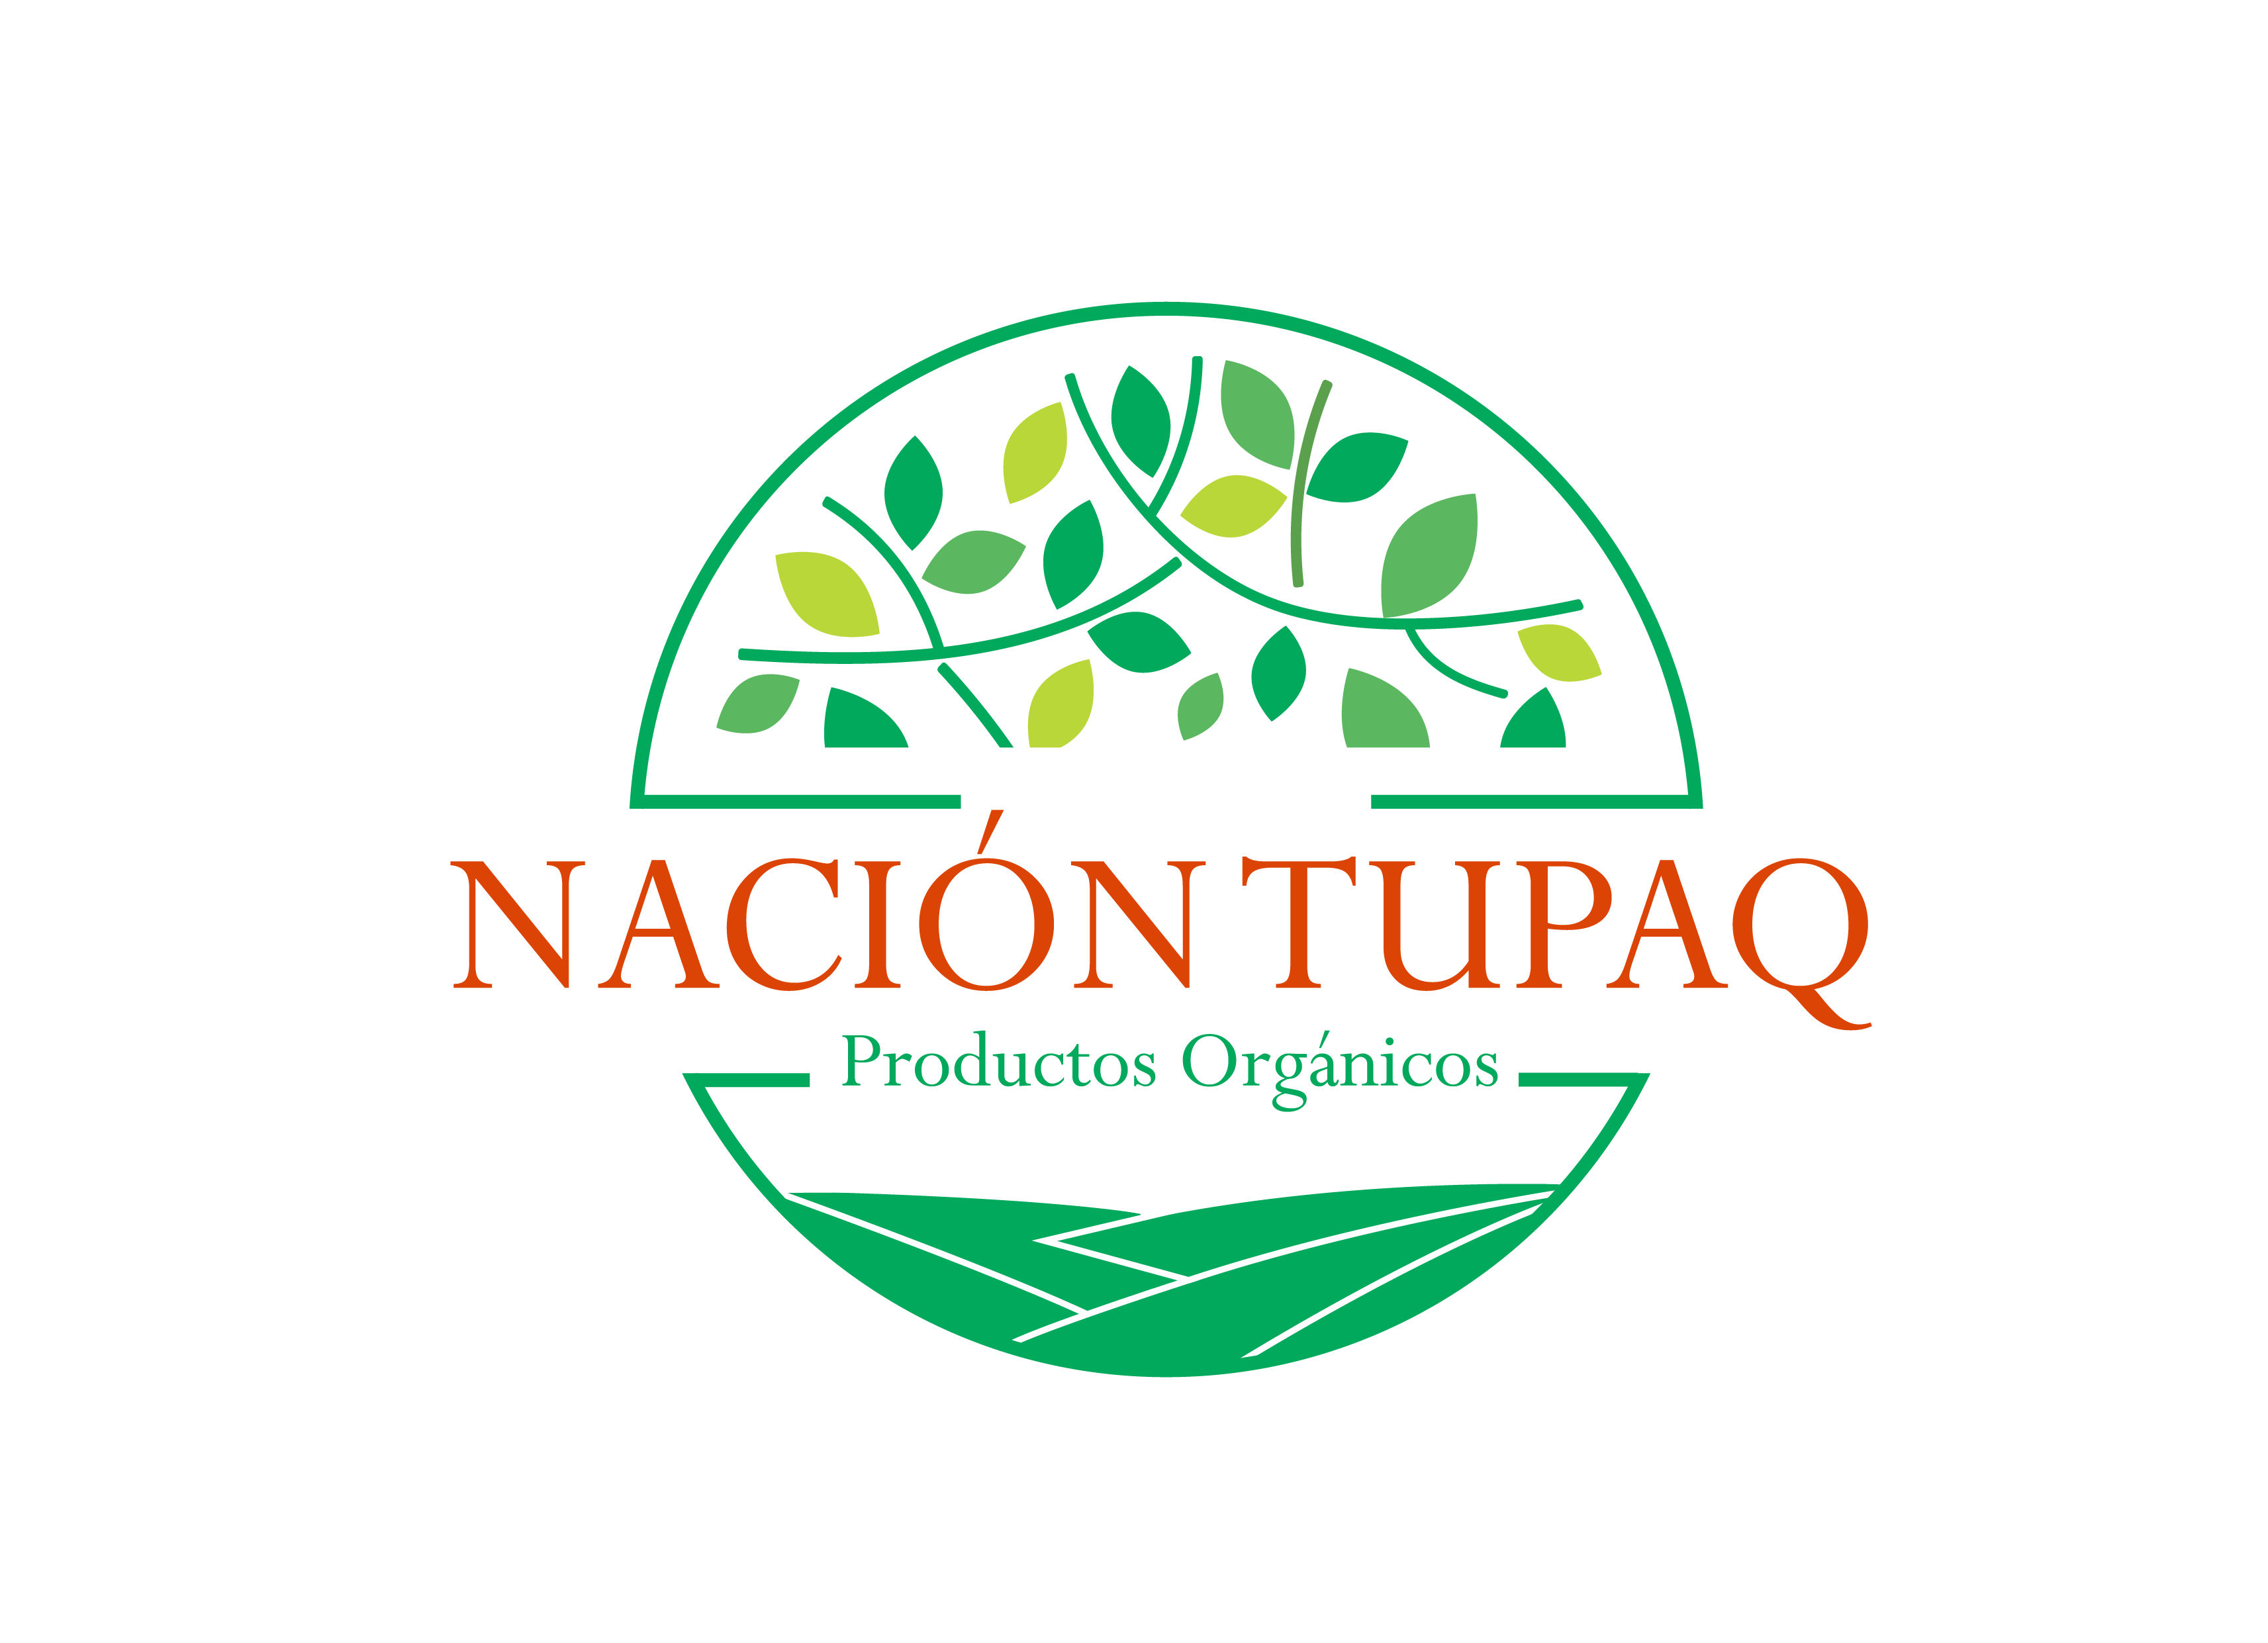 Nación Tupaq